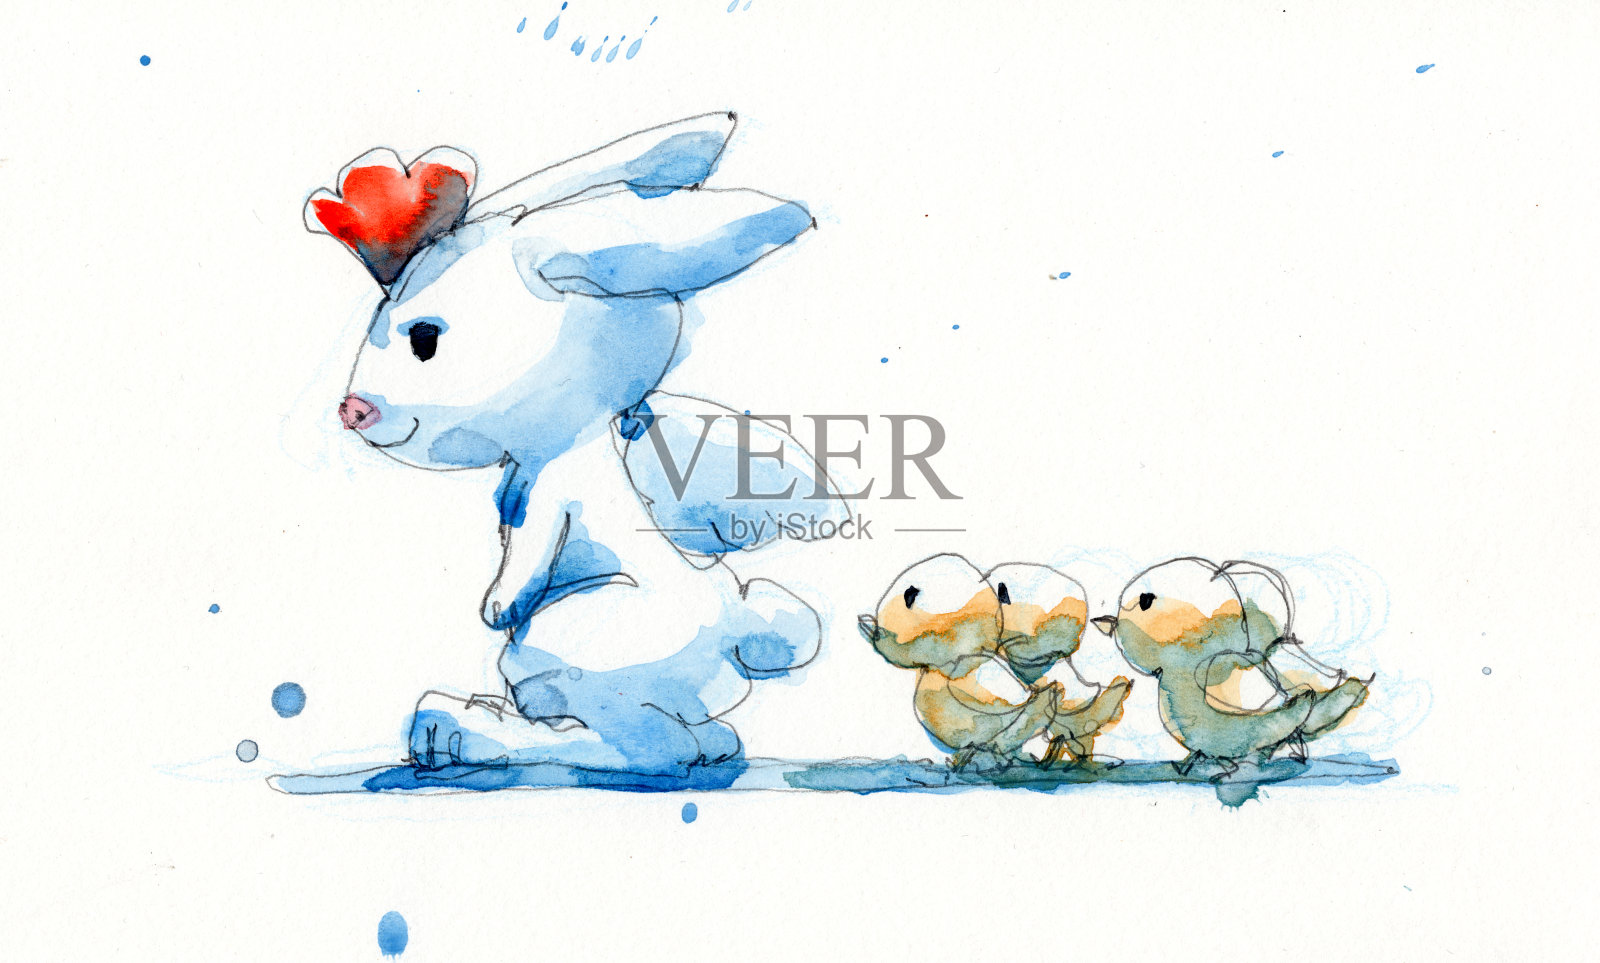 水彩画插图一套在母鸡服装的兔子和小小鸡，手绘在纸上插画图片素材